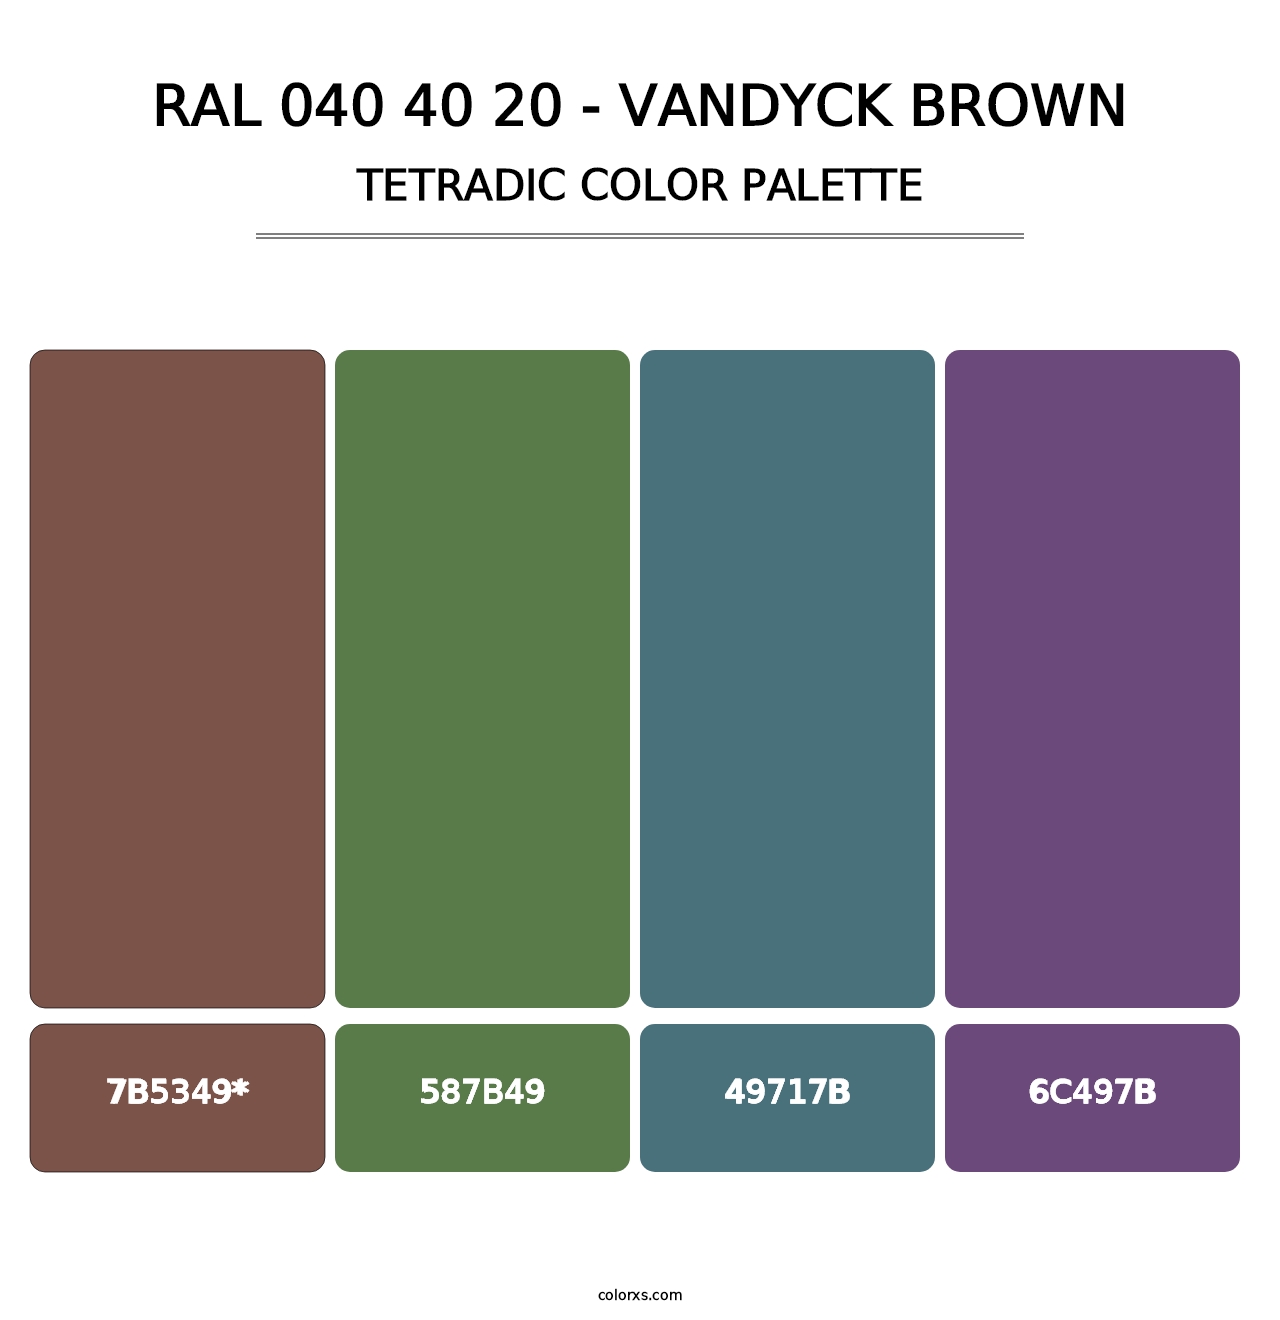 RAL 040 40 20 - Vandyck Brown - Tetradic Color Palette